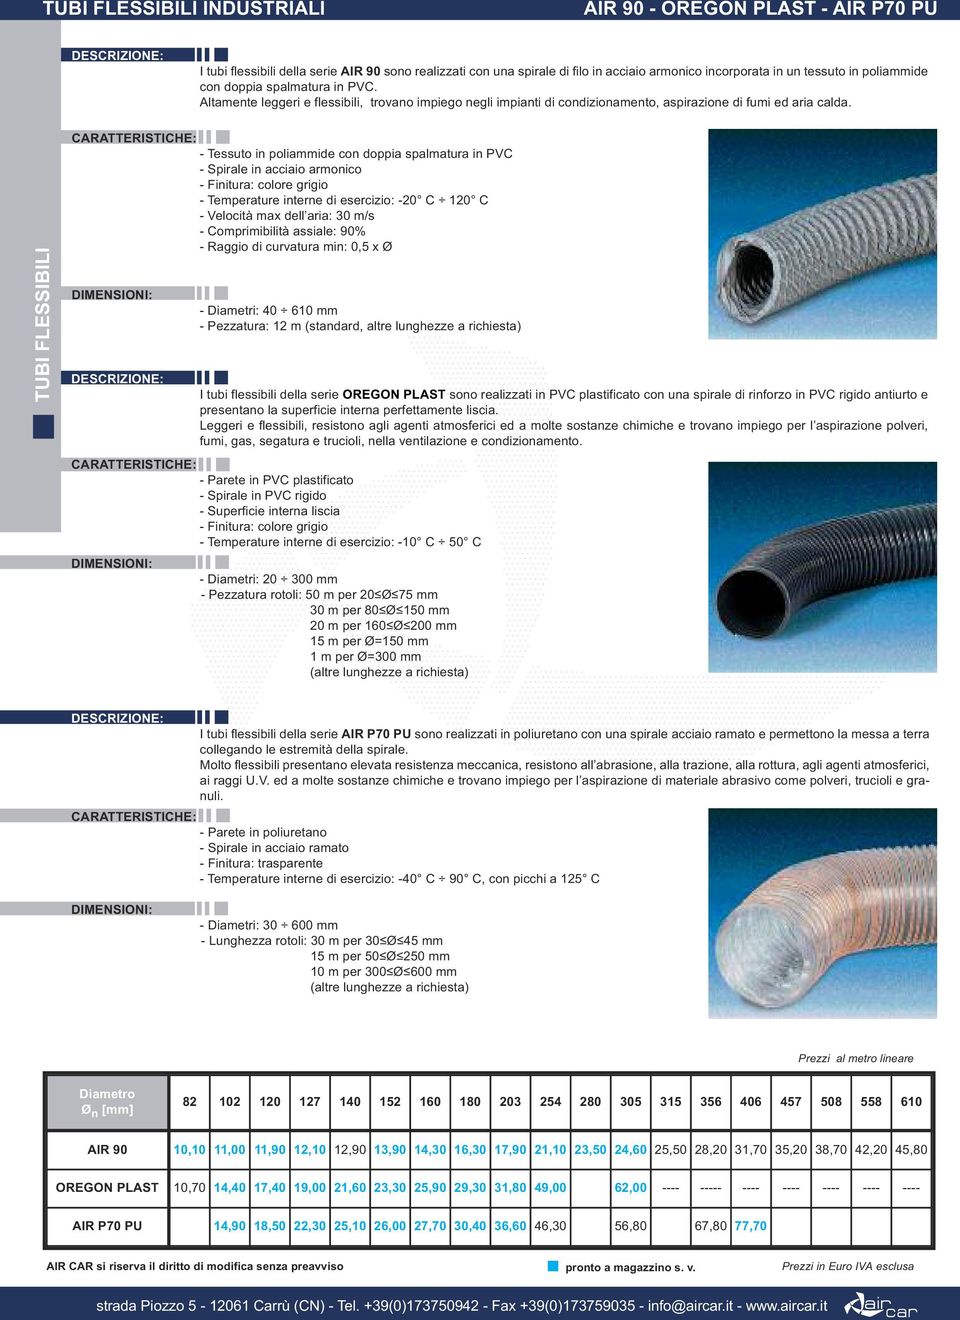 TUBI FLESSIBILI - Tessuto in poliammide con doppia spalmatura in PVC - Spirale in acciaio armonico - Temperature interne di esercizio: -20 C 120 C - Comprimibilità assiale: 90% - Raggio di curvatura